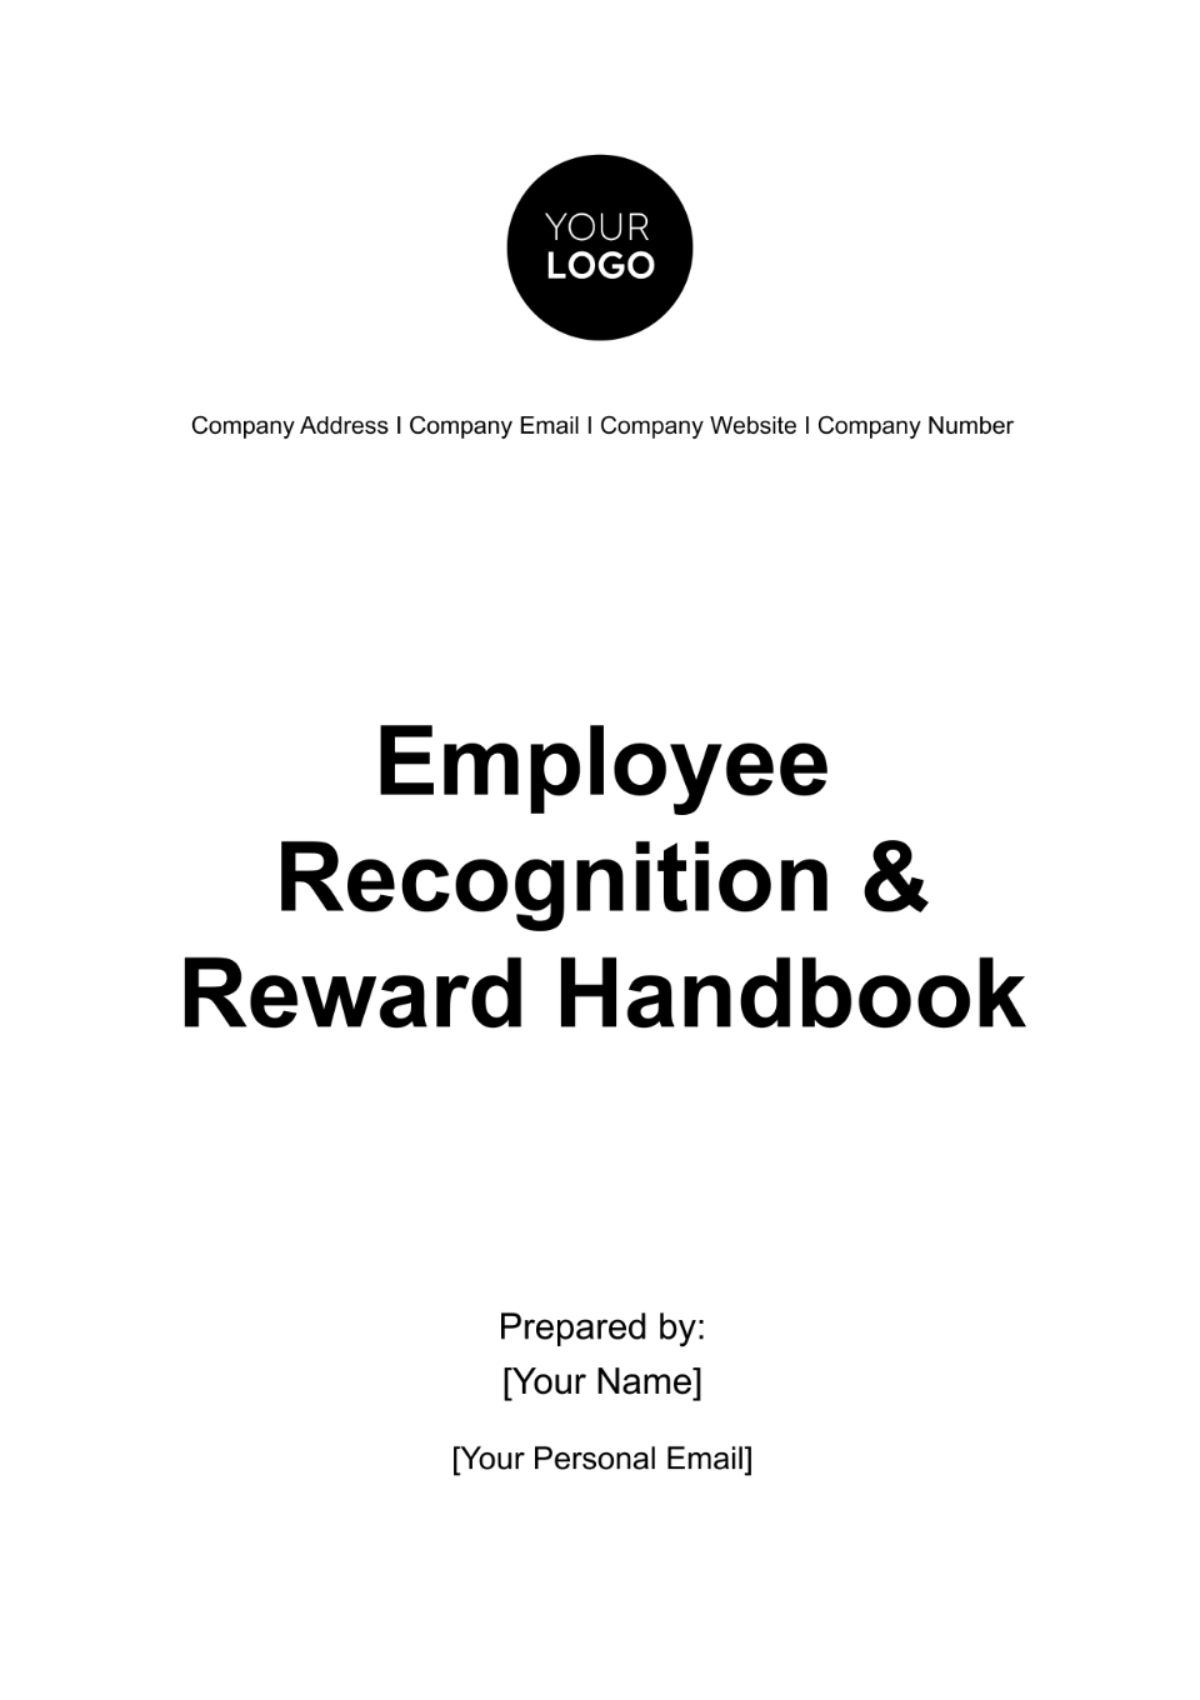 Free Employee Recognition & Reward Handbook HR Template